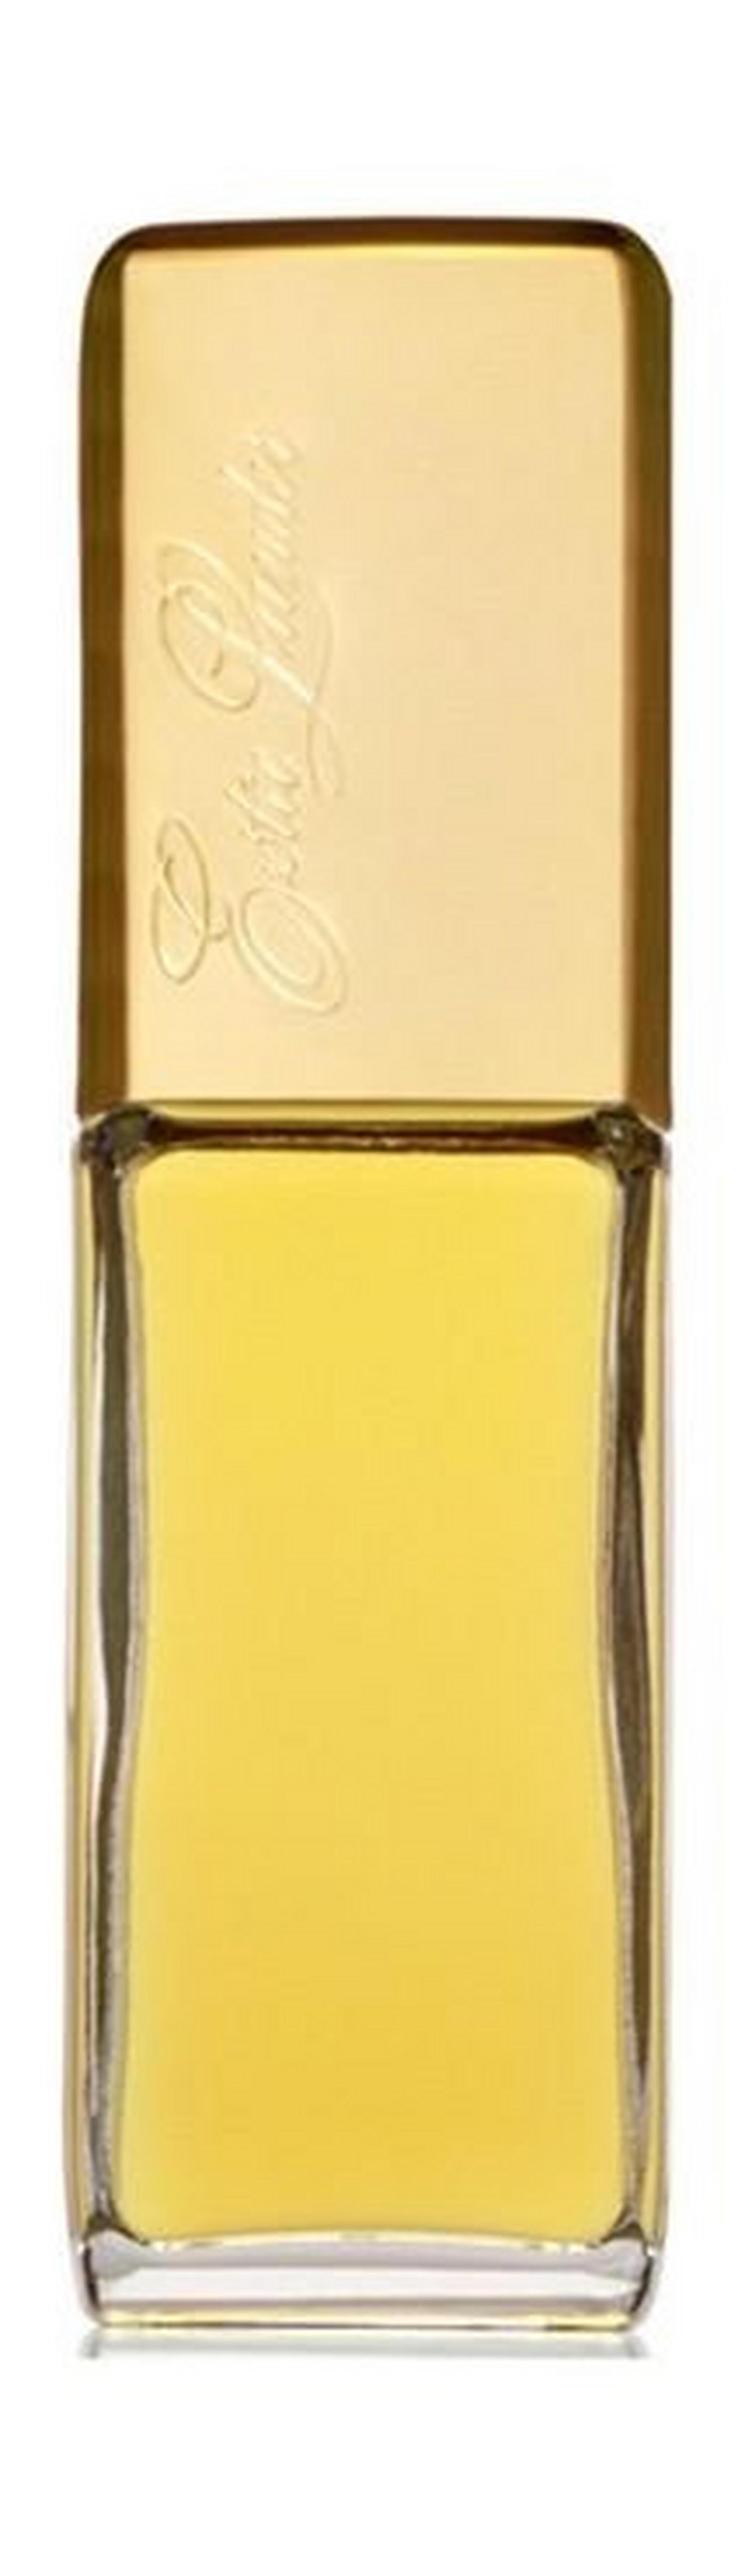 Estee Lauder Private Collection For Women 50 ml Eau de Parfum